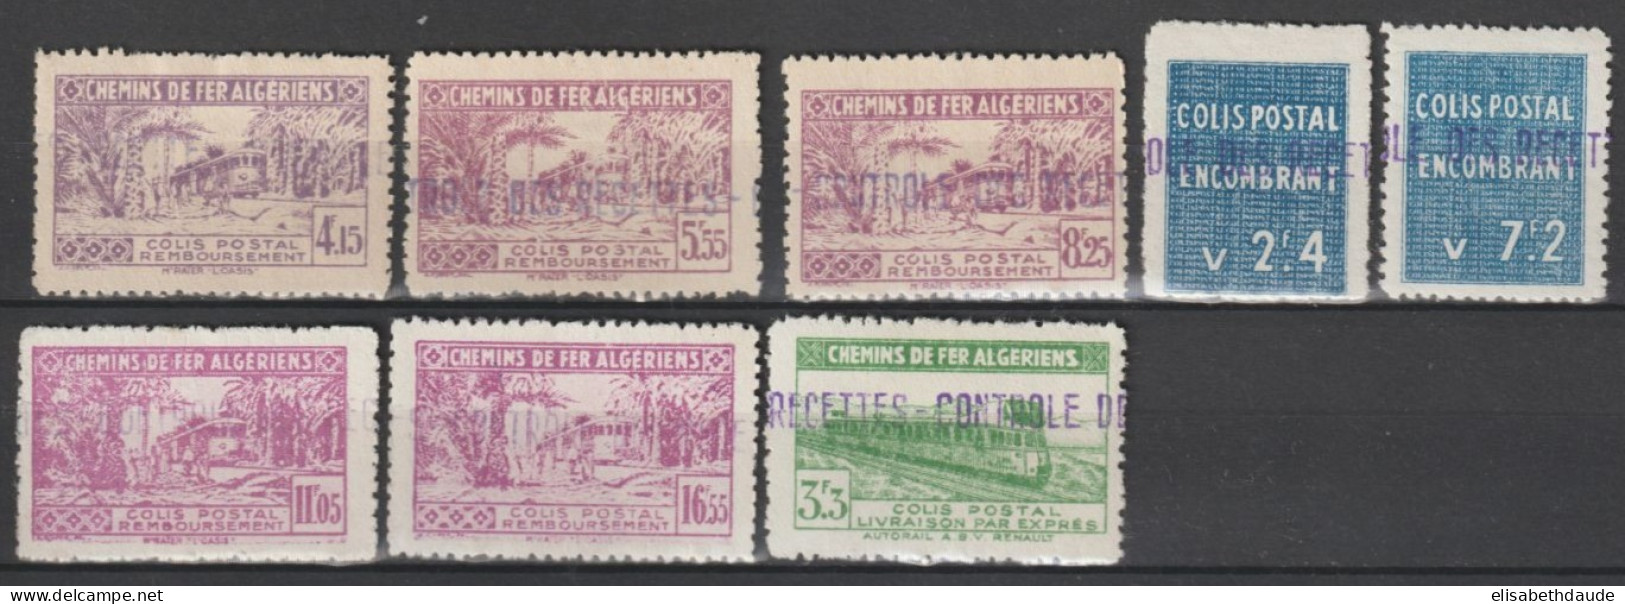 ALGERIE - 1941 - COLIS POSTAUX - YVERT N°90//94 (*) + 89 + 96/97 * MLH - COTE = 69 EUR - Colis Postaux